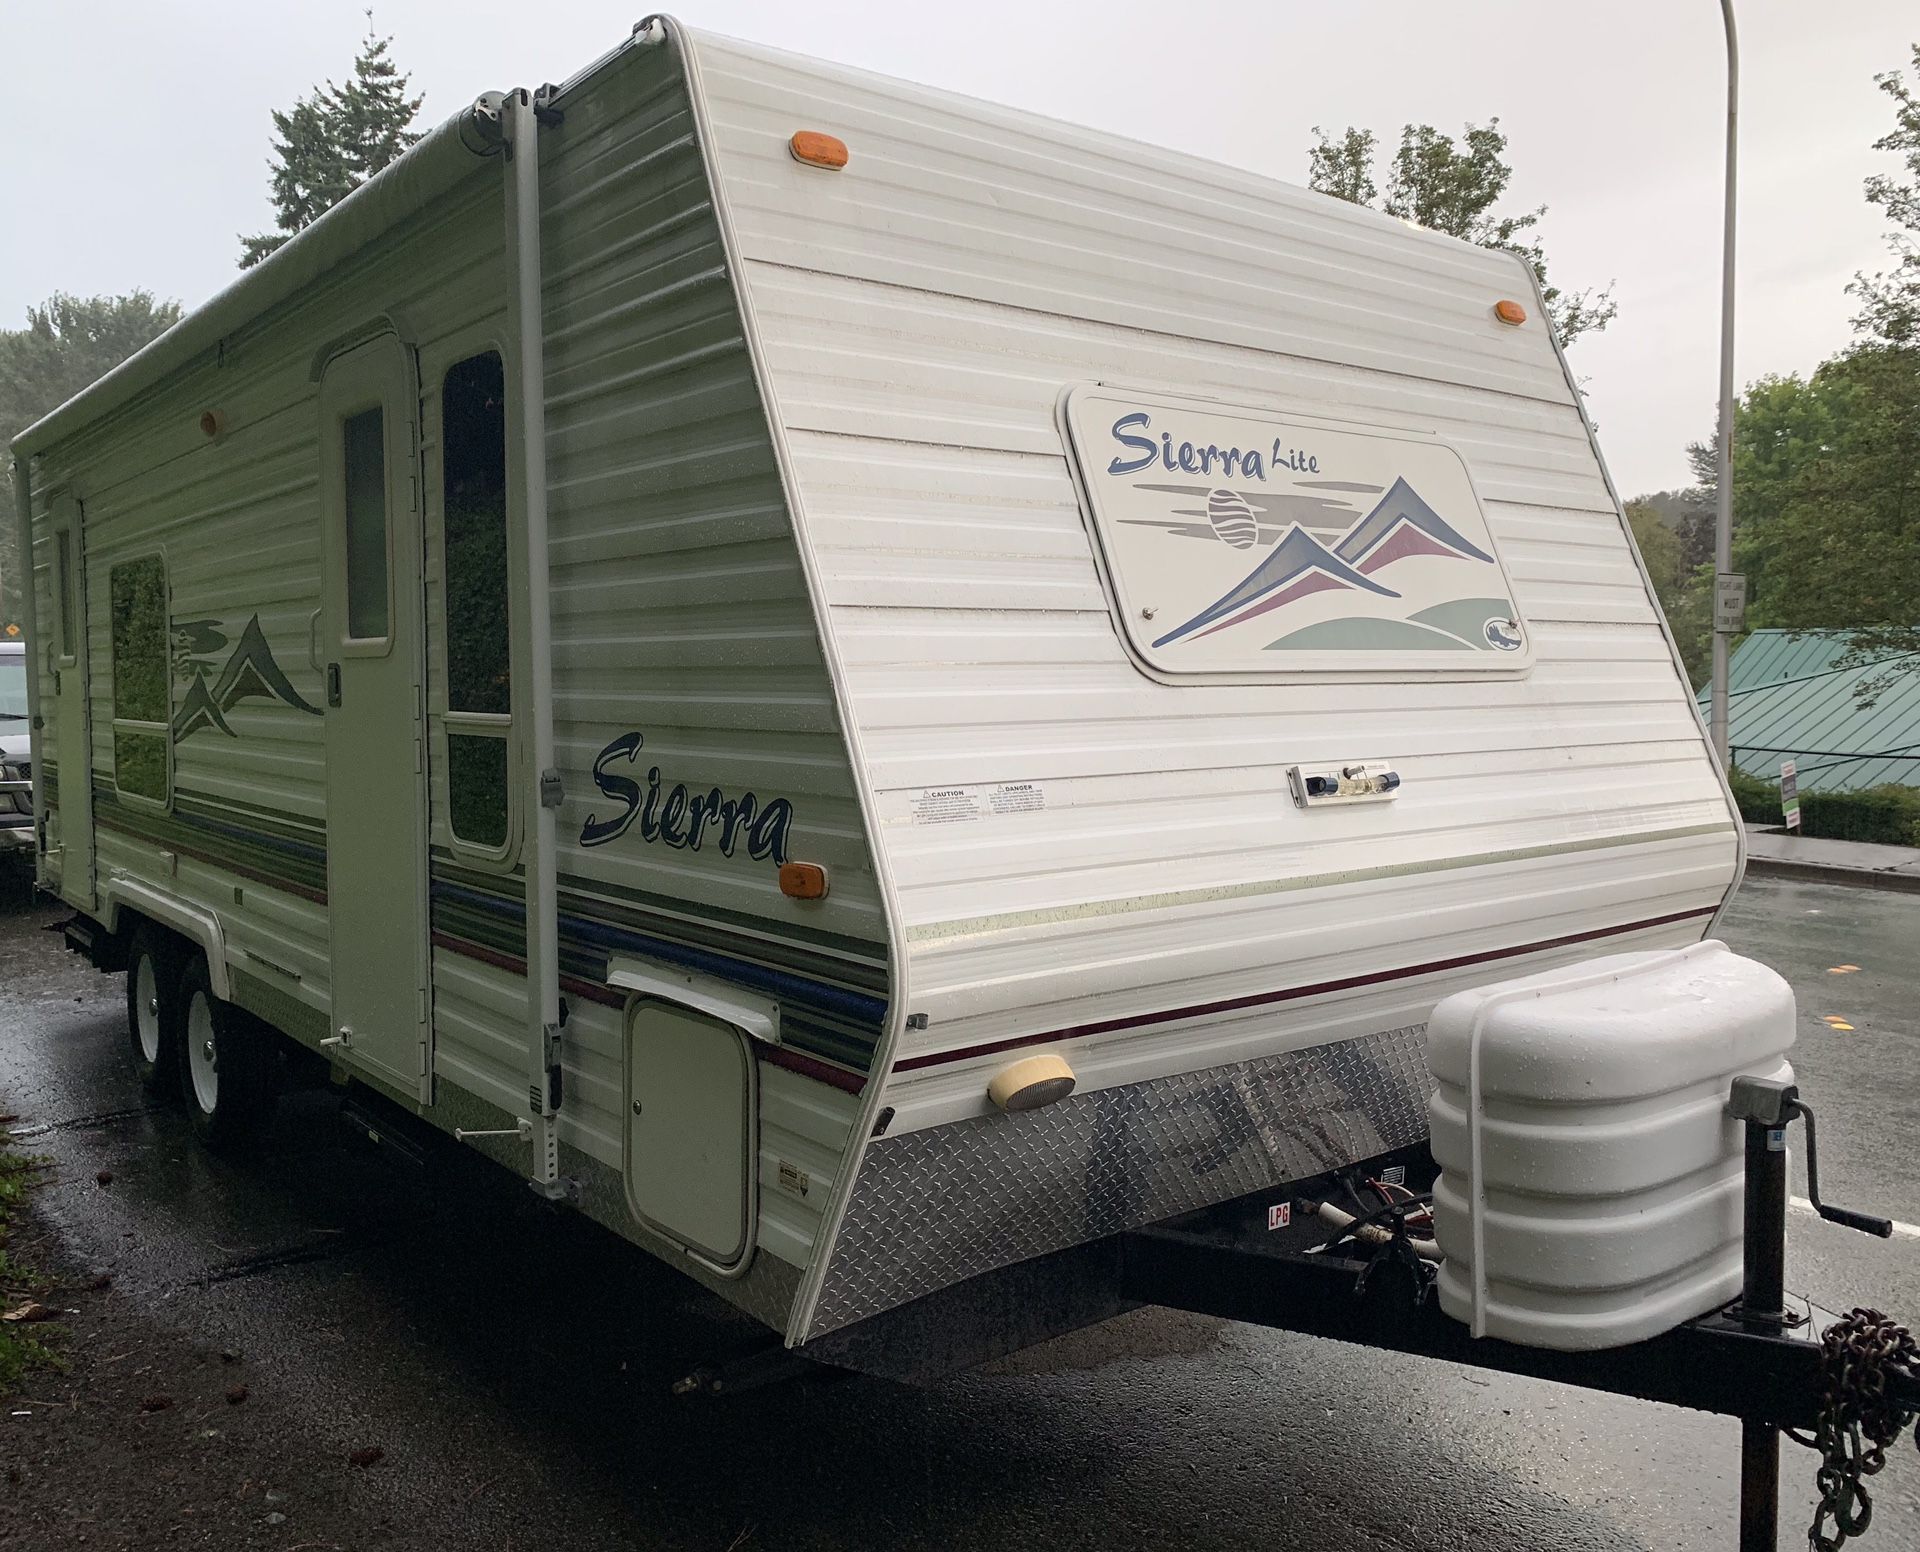 2003 sierra lite double door 25 ft travel trailer